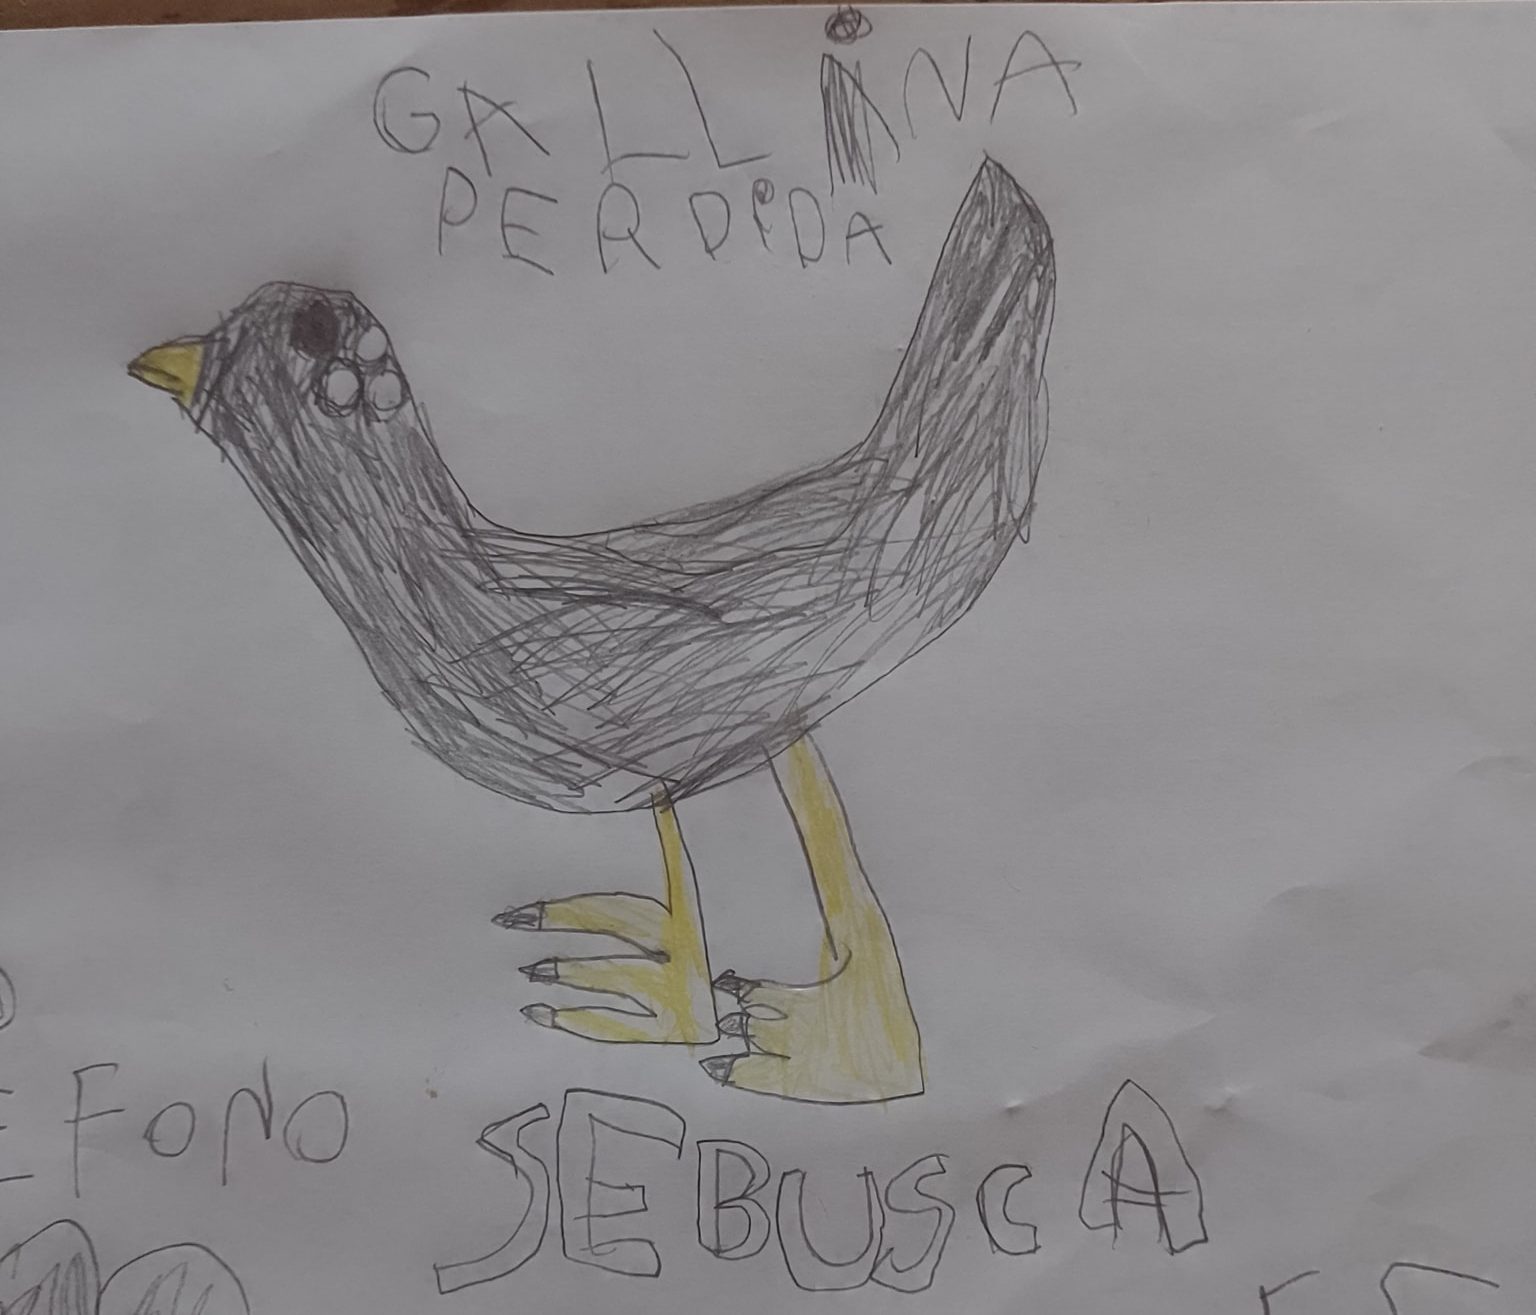 A falta de foto, una nena hizo un dibujo de su gallina perdida y logró  encontrarla